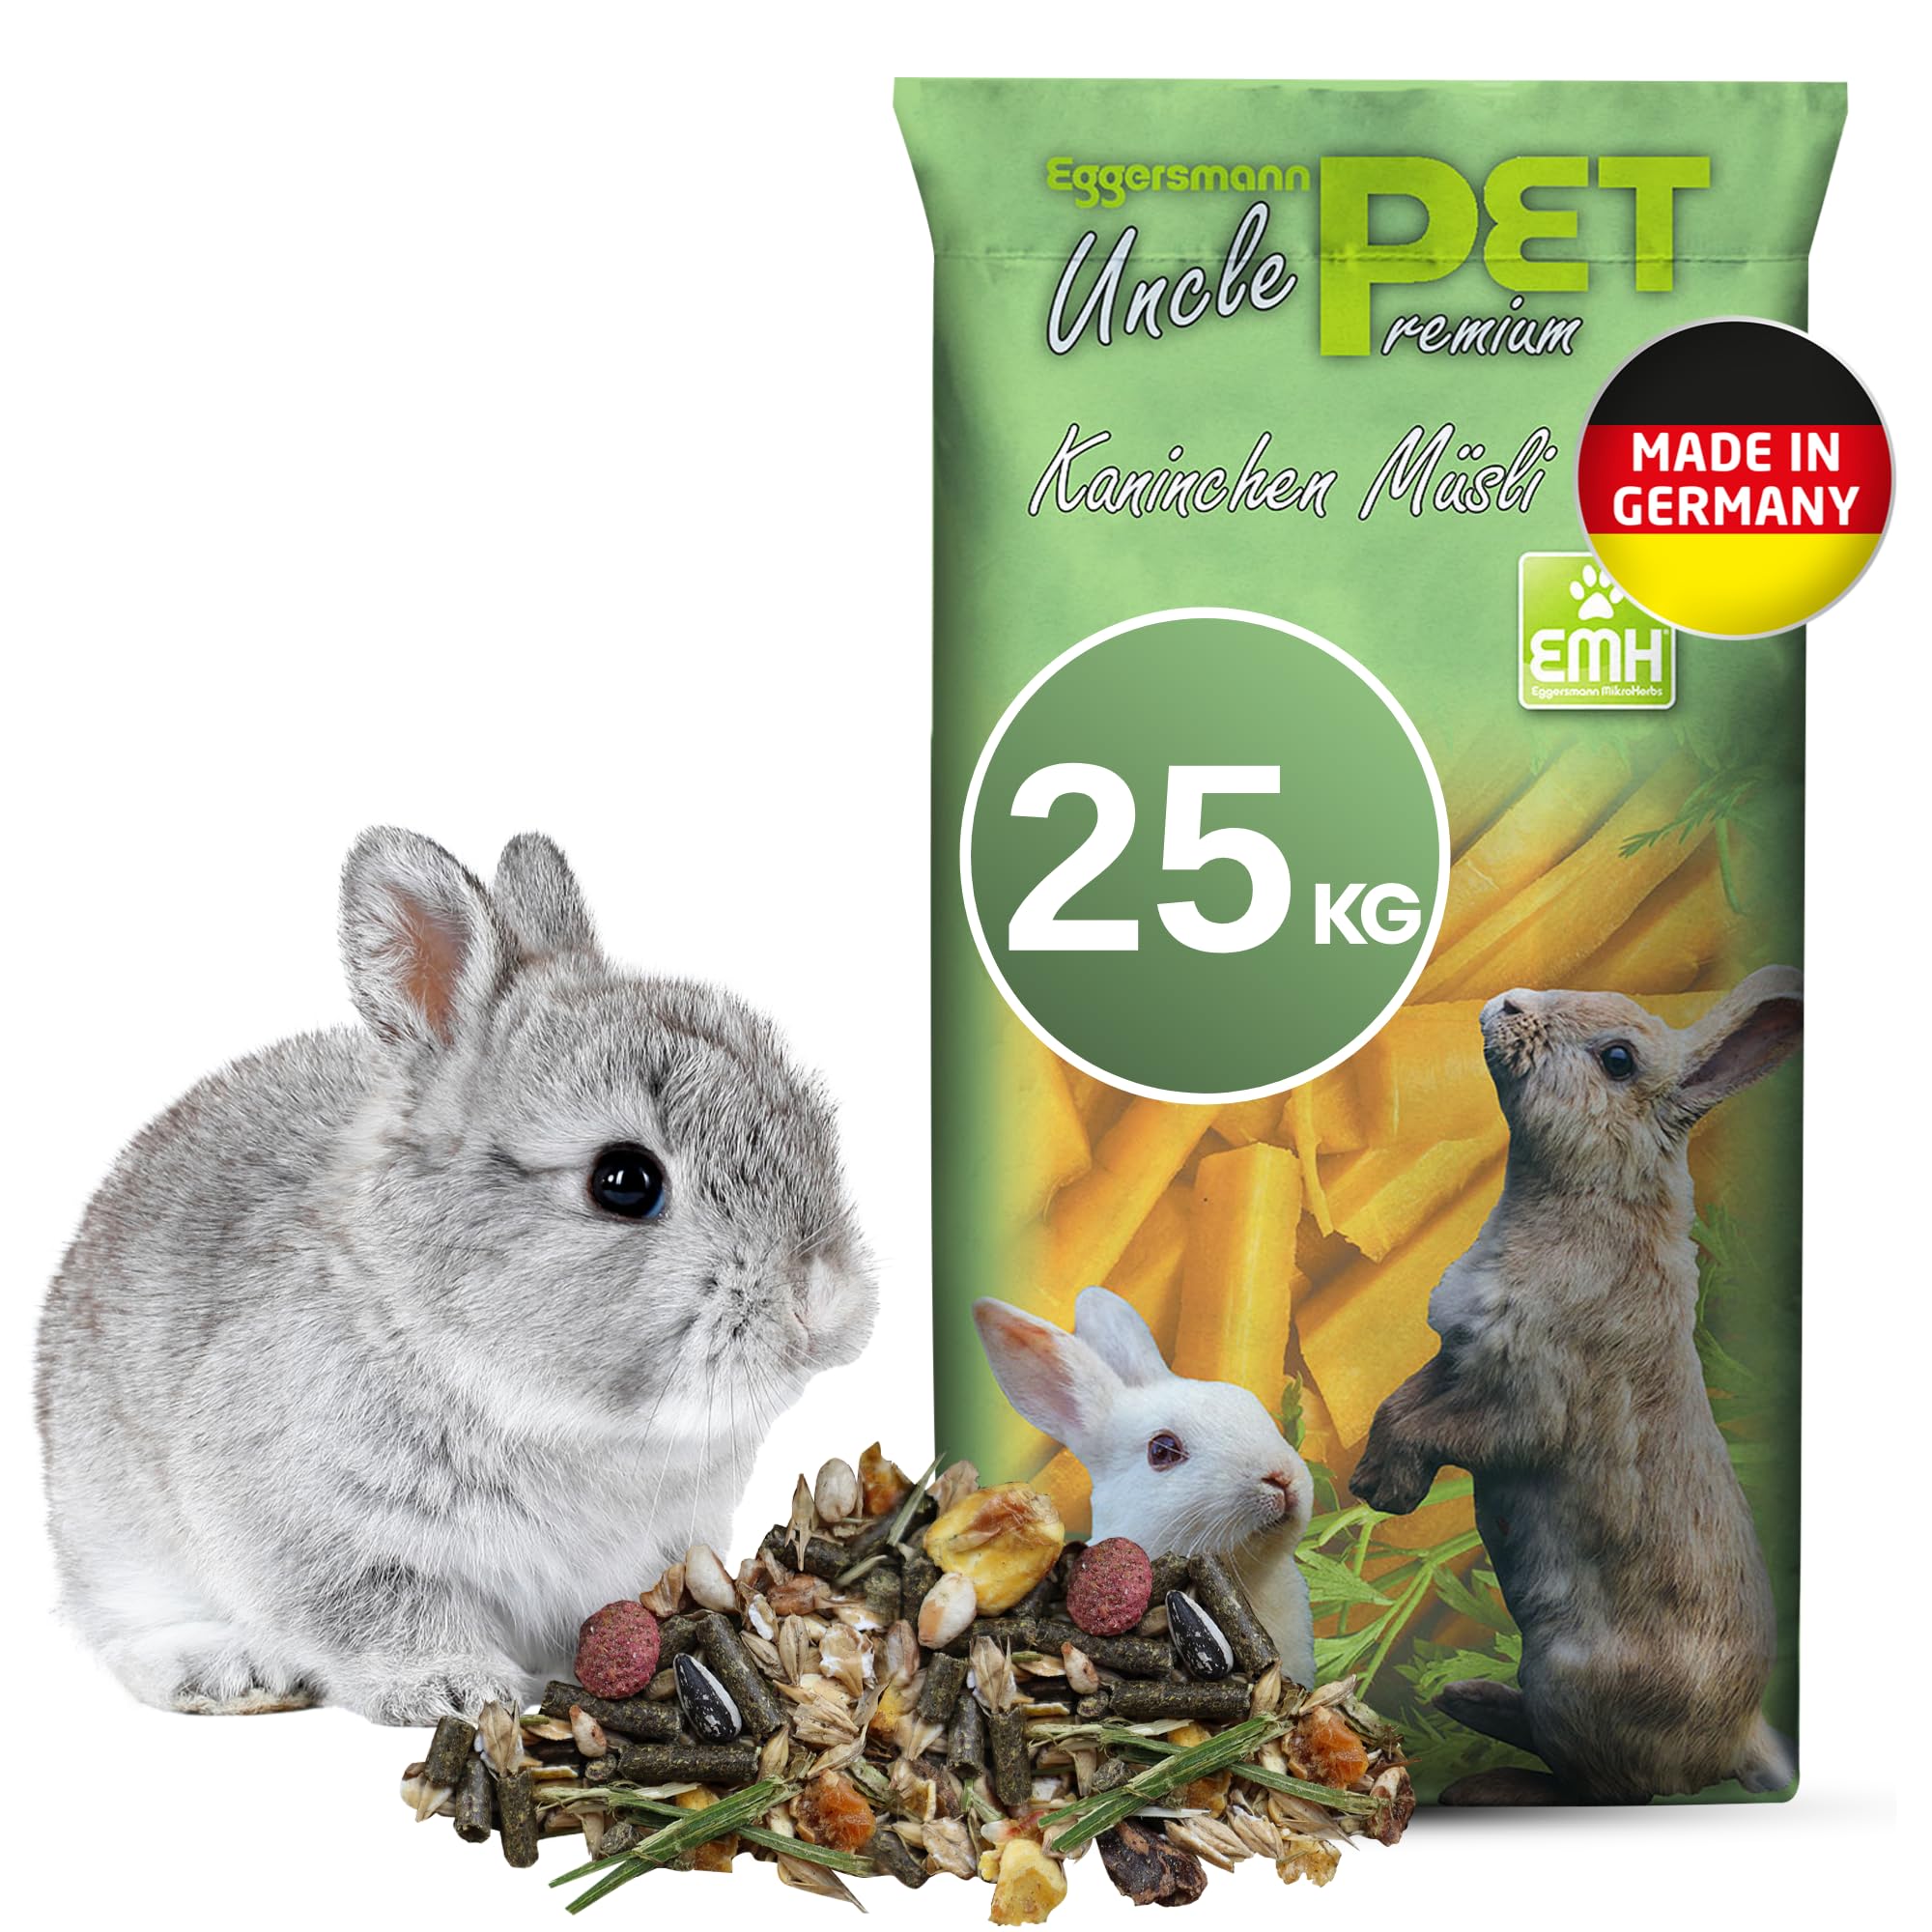 Eggersmann Uncle Pet 25 kg Kaninchenfutter - Premium Kaninchen Müsli - Kaninchen Futter mit der natürlichen Kraft aus Kräutern und Karotten - Kaninchenzubehör (25 kg Sack)